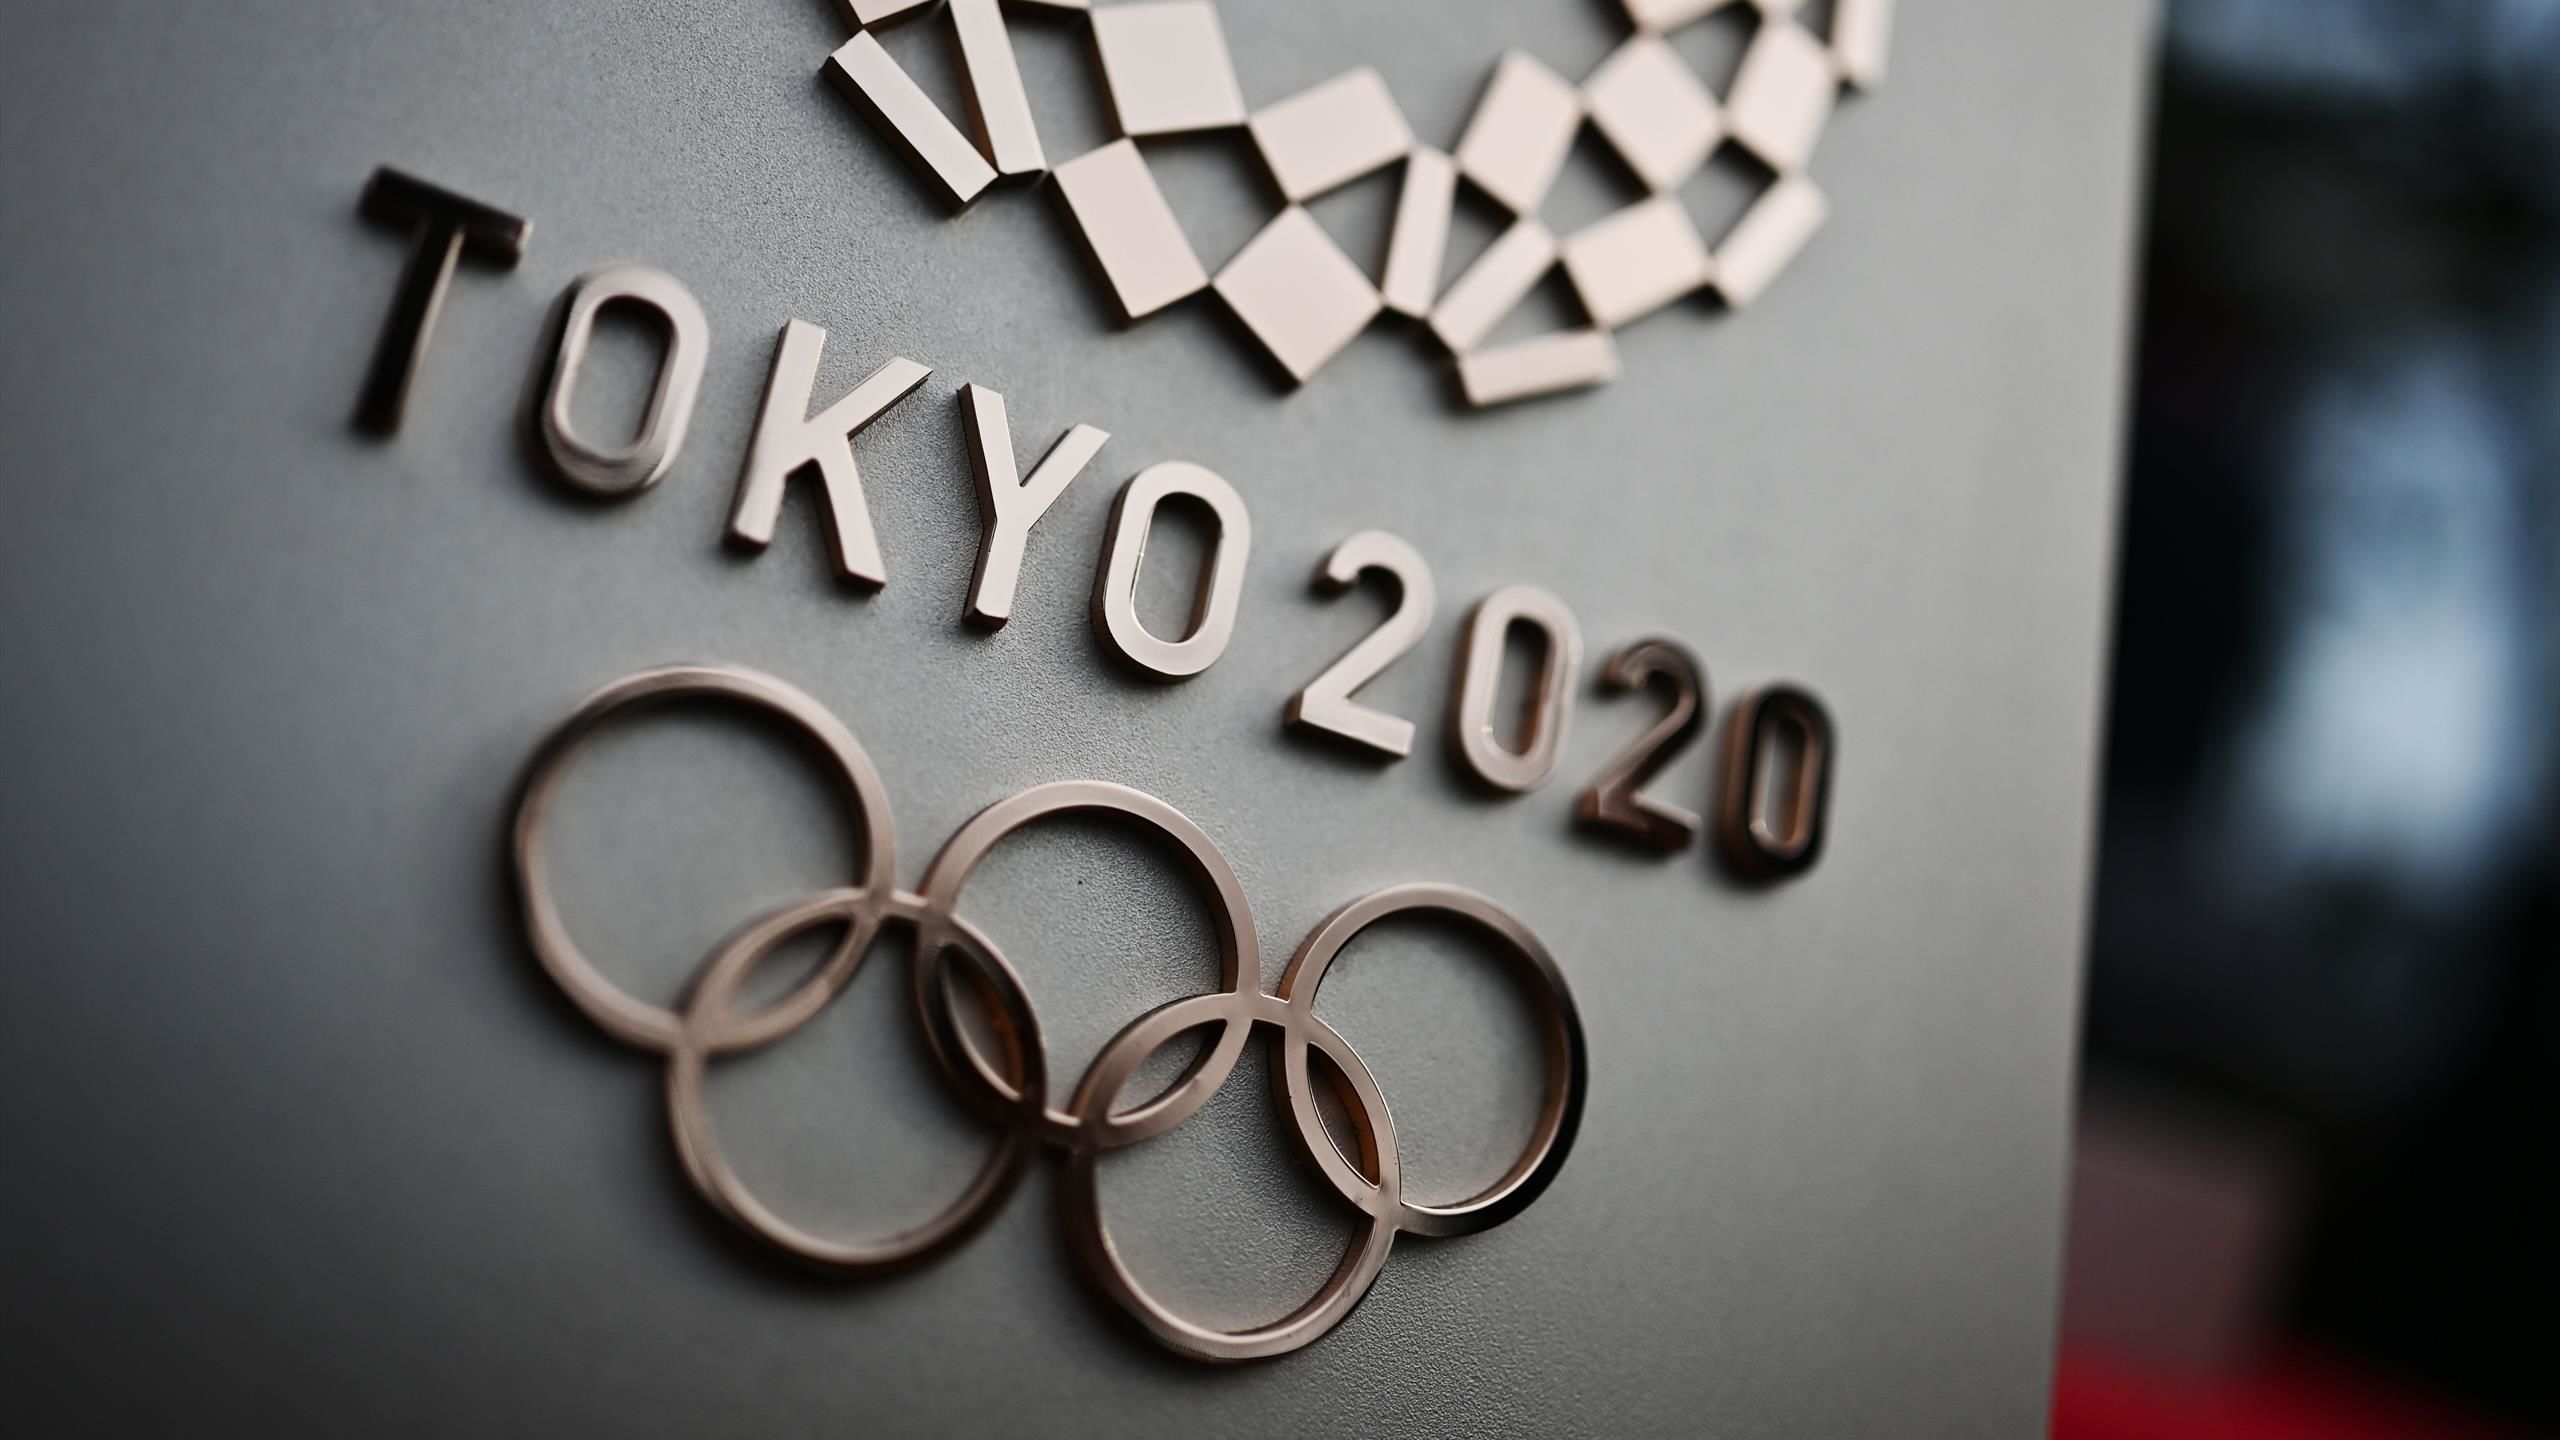 Организаторы Олимпиады в Токио могут ввести систему штрафов за нарушение антиковидных правил